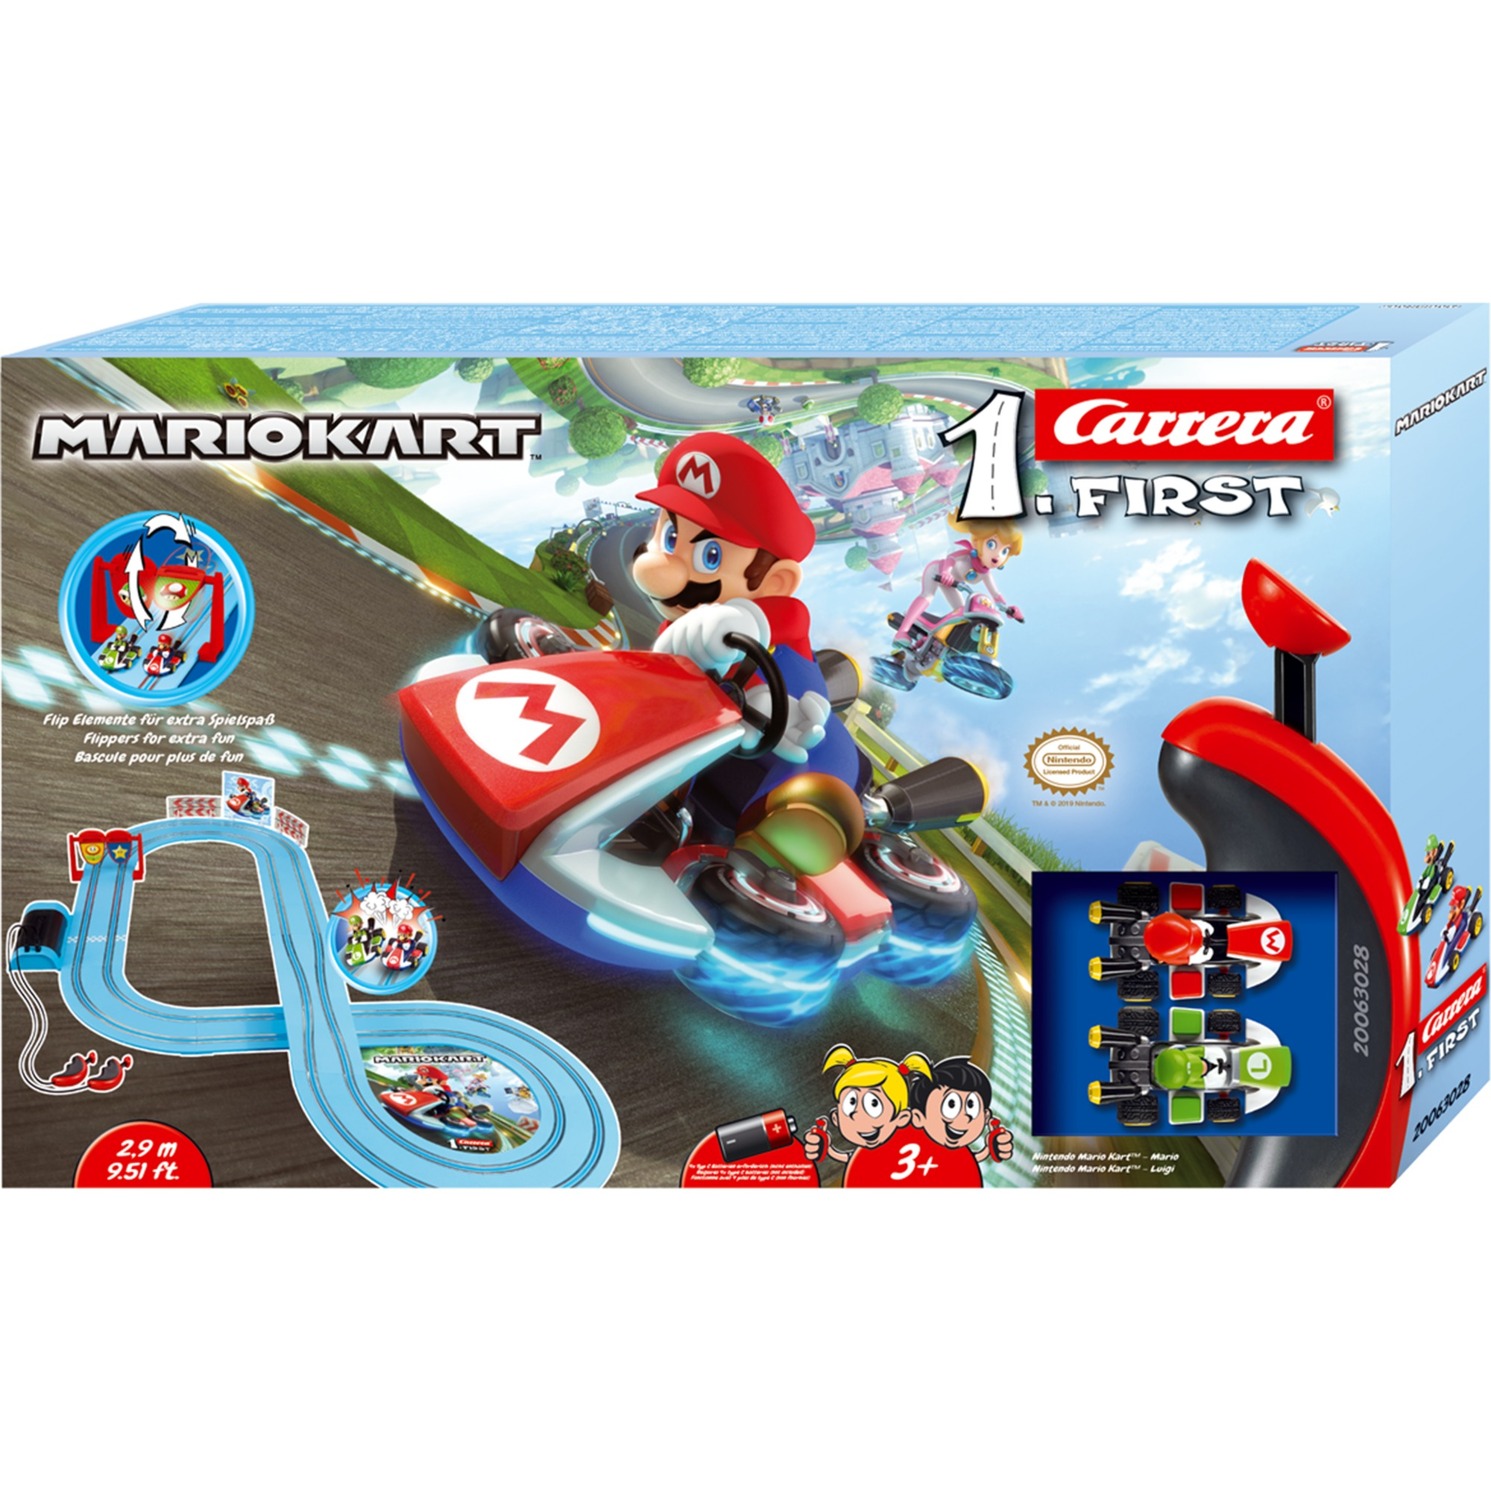 FIRST Nintendo Mario Kart, Rennbahn von Carrera